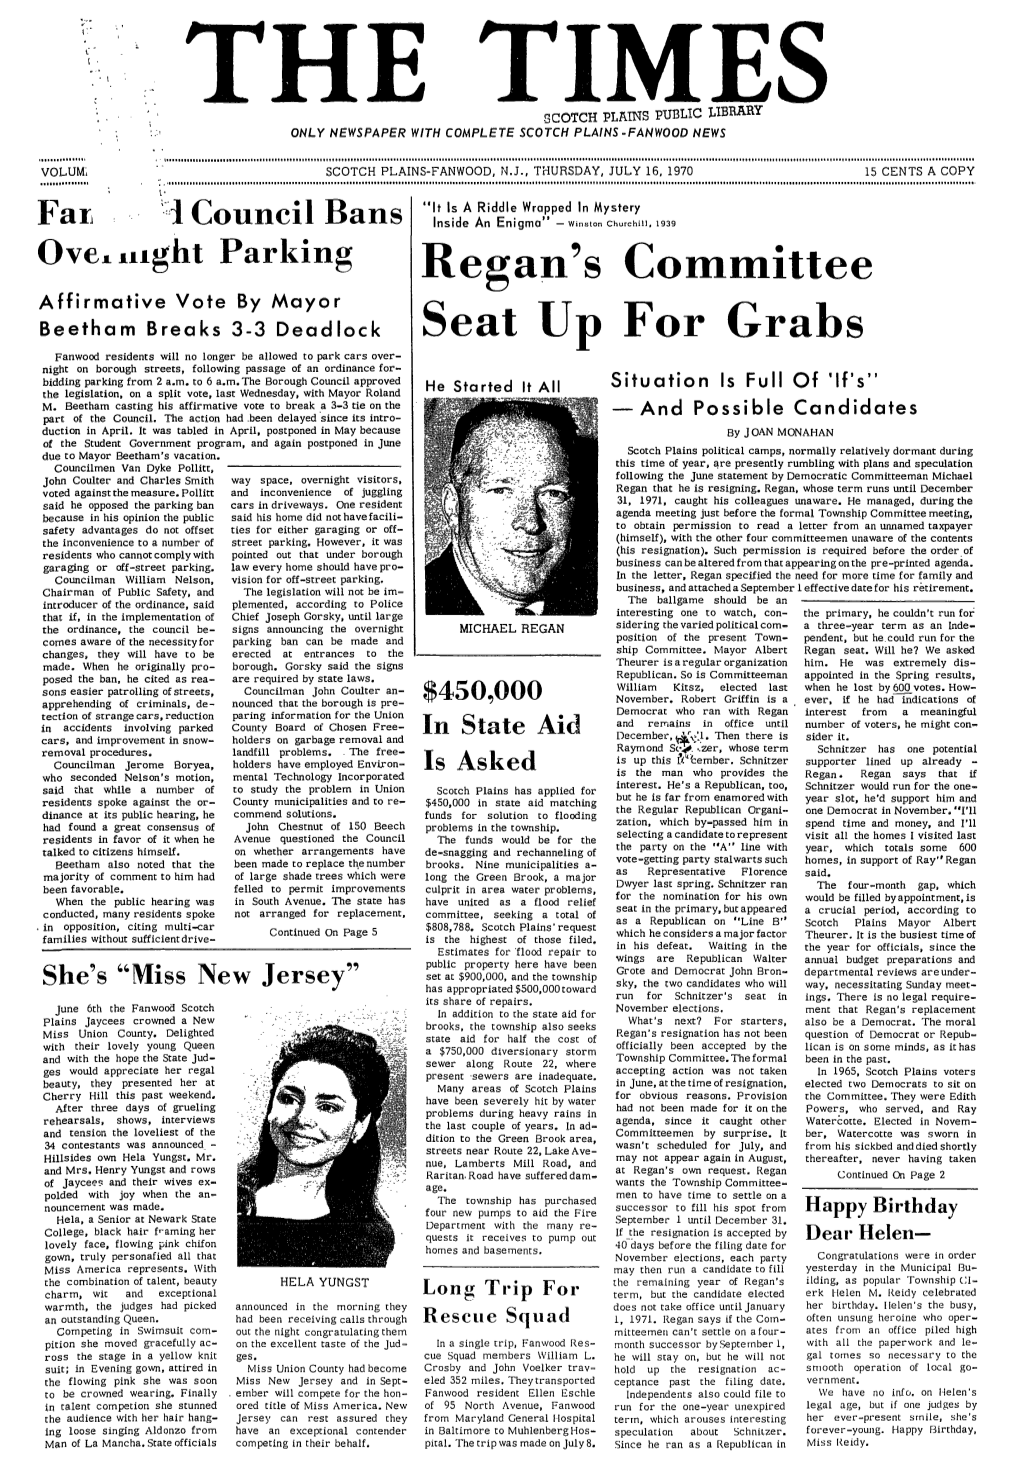 Regan's Committee Seat up for Grabs